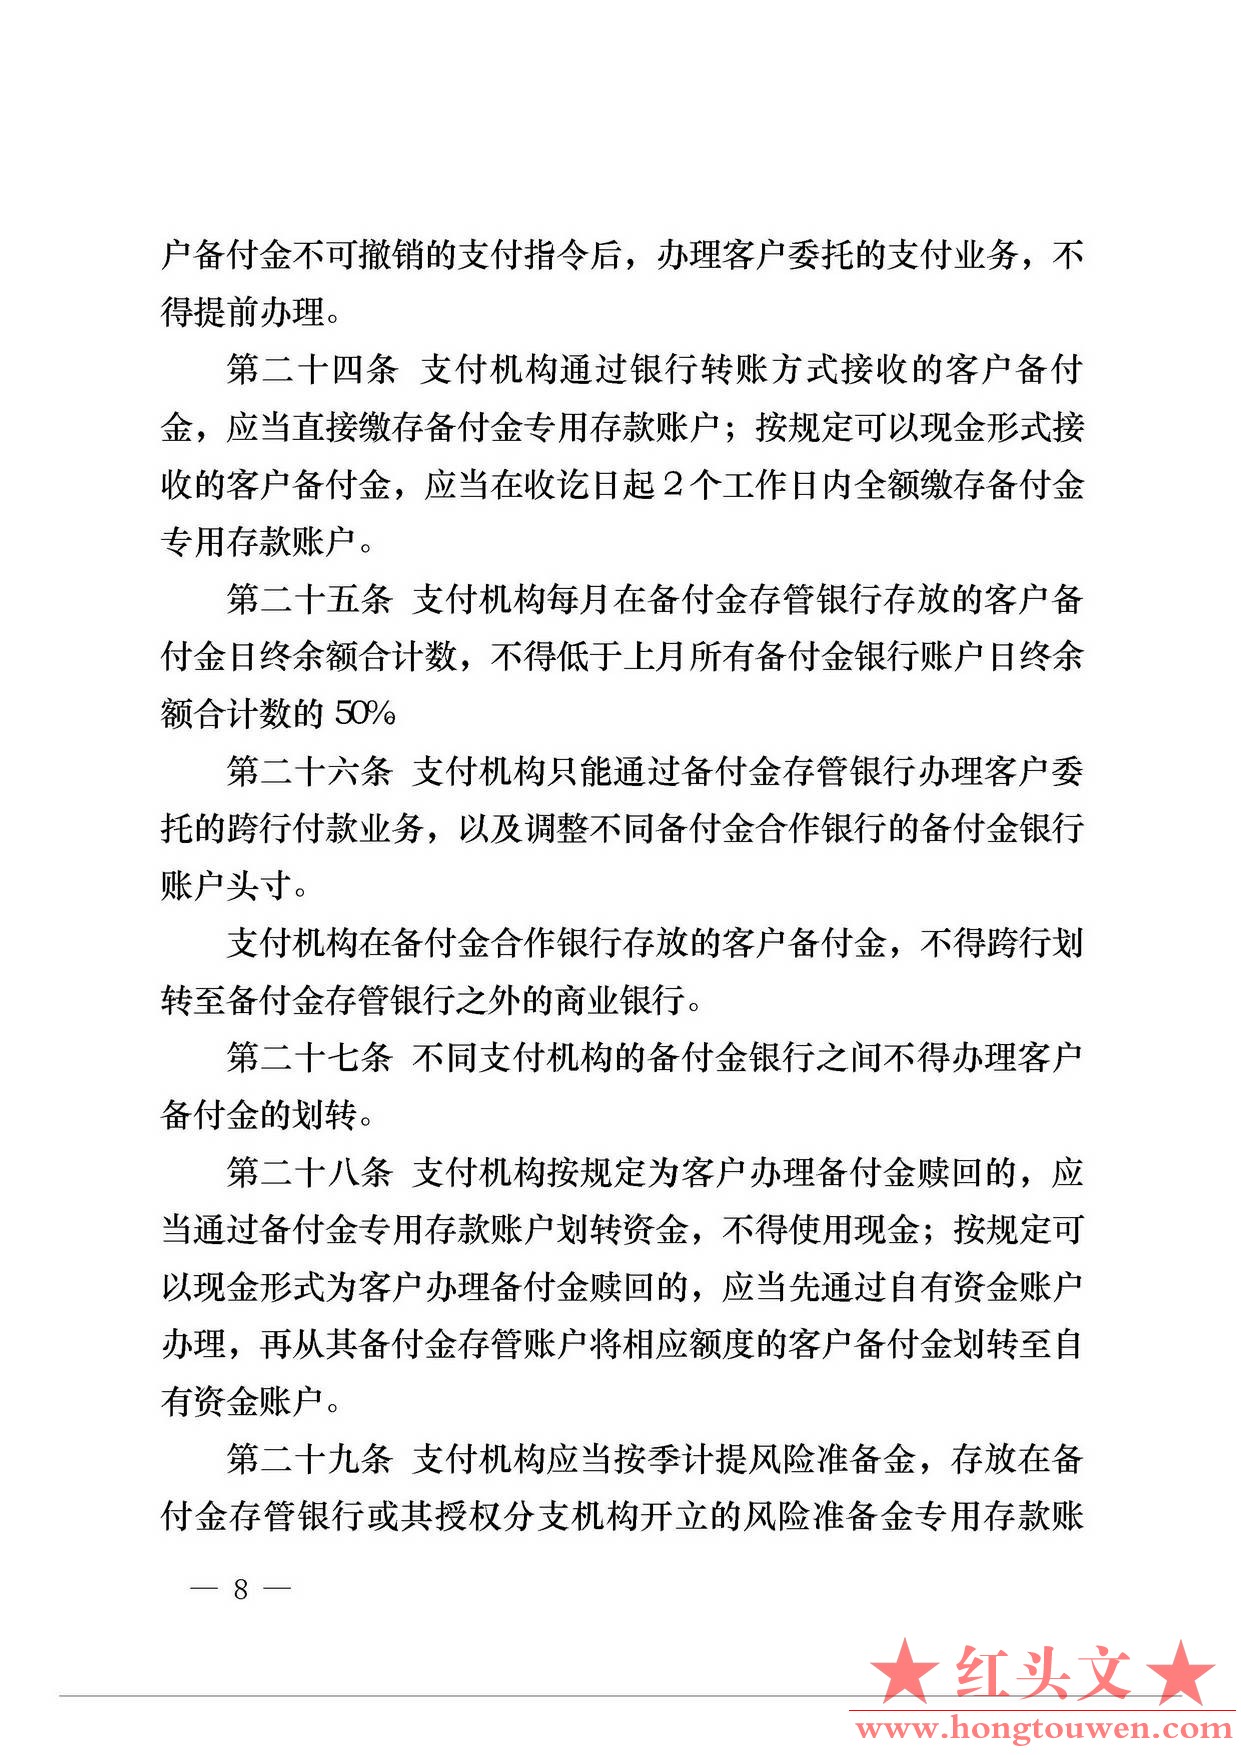 中国人民银行公告[2013]6号-《支付机构客户备付金存管办法》_页面_08.jpg.jpg